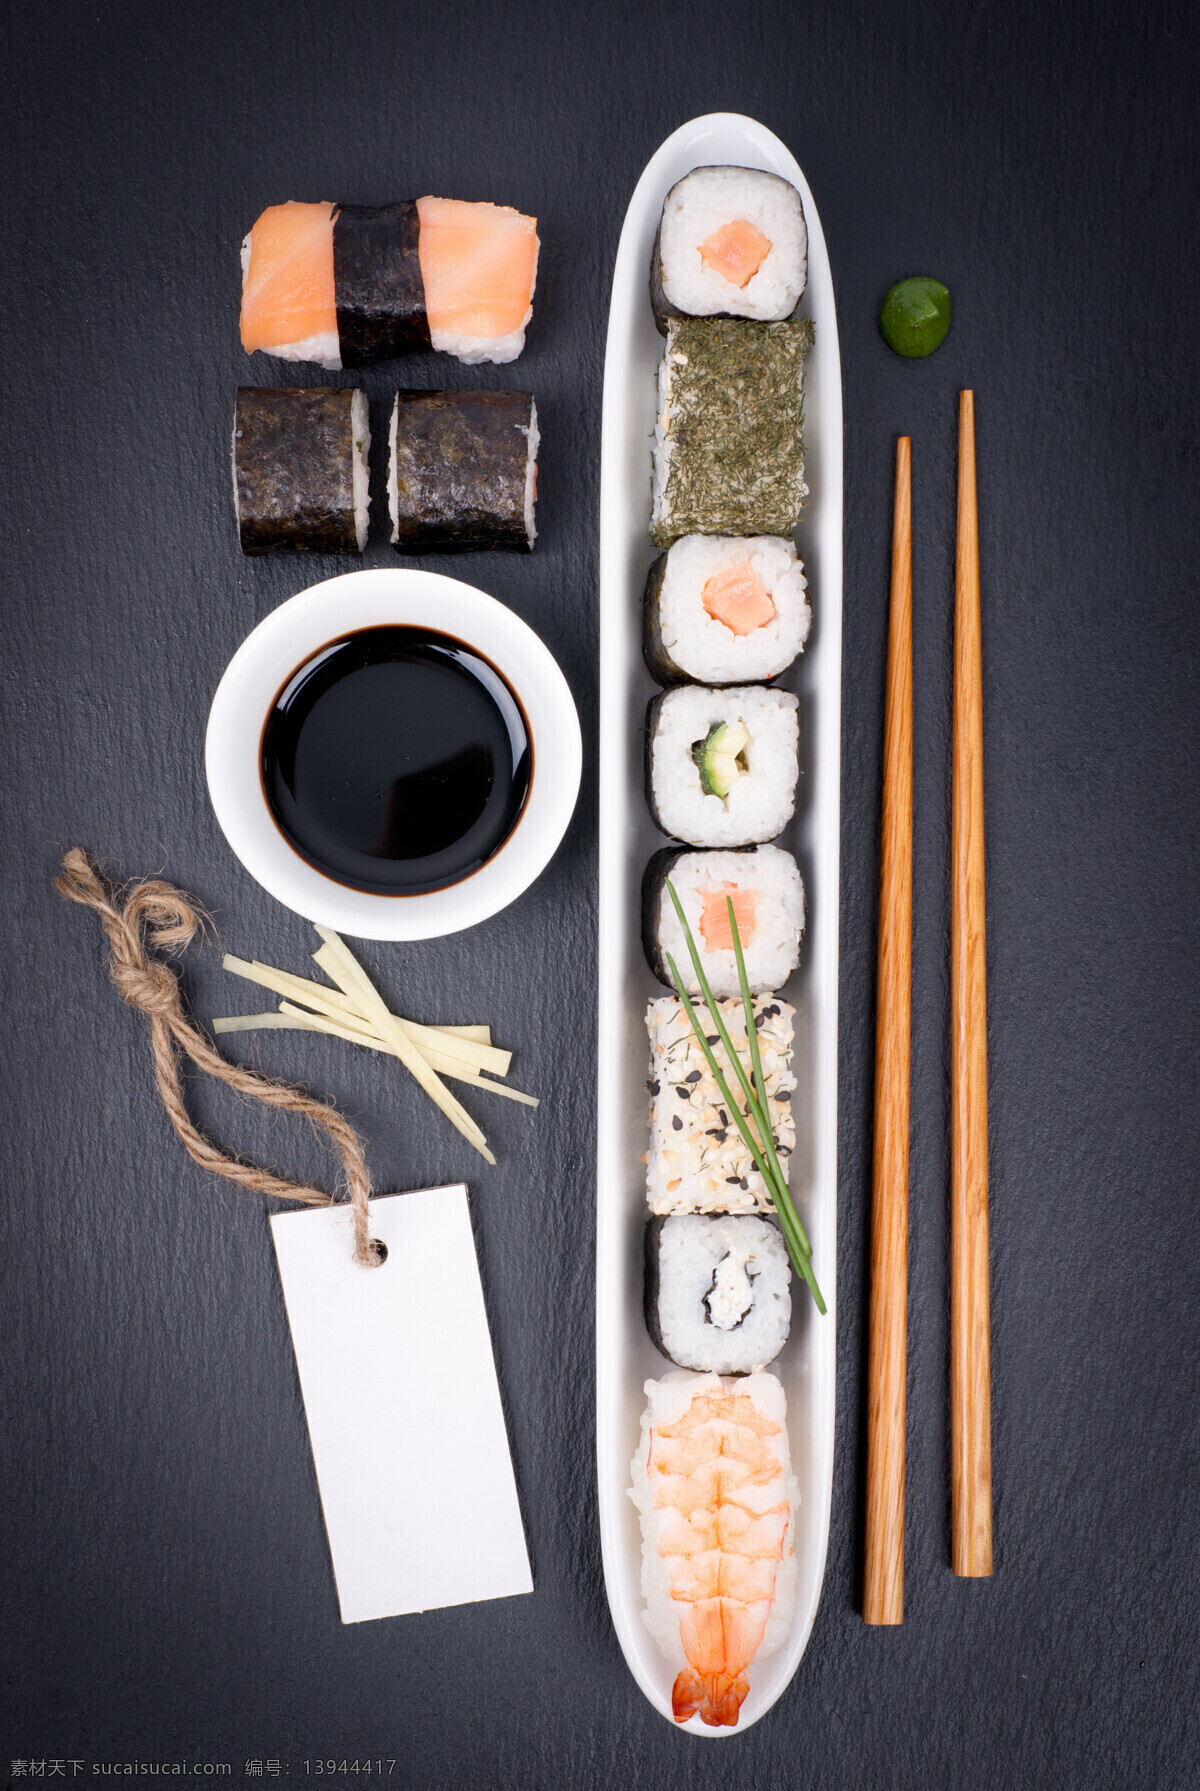 日本 寿司 蘸 酱 蘸酱 吊卡 吊牌 筷子 虾仁 海鲜 鱼肉 日本料理 日本美食 国外美食 美味 外国美食 餐饮美食 黑色